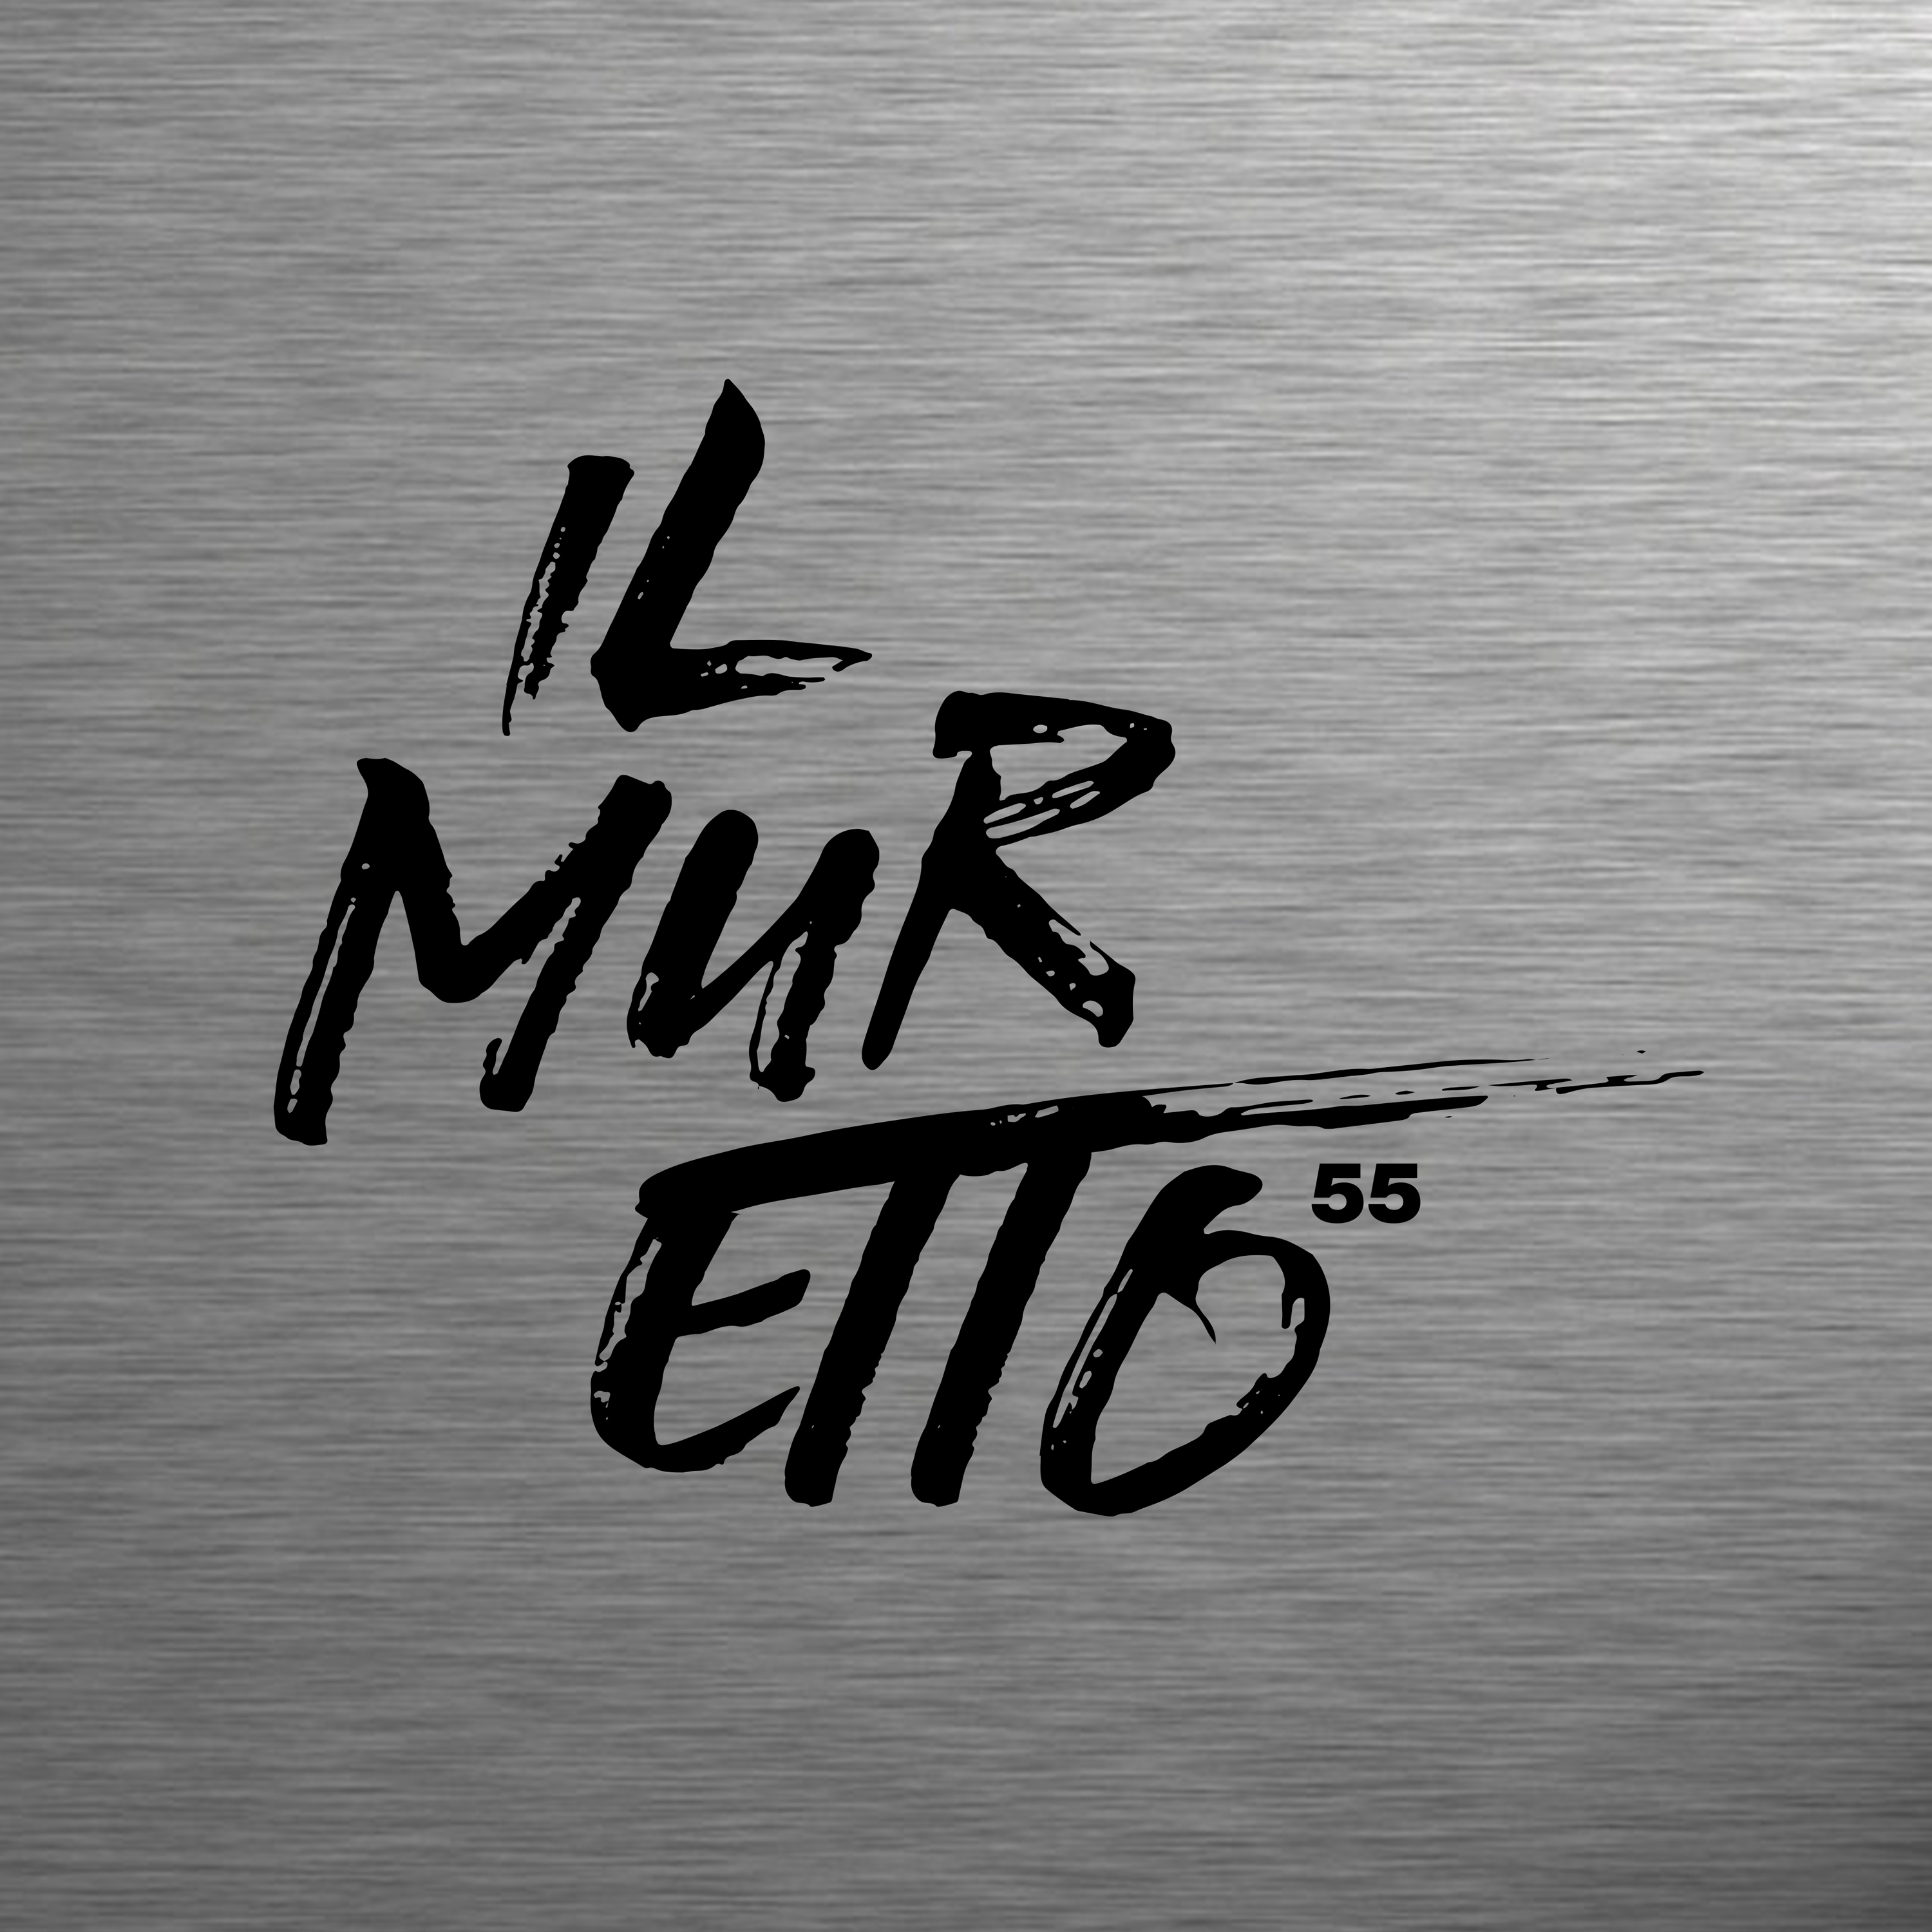 ilMuretto 55 (Continuous DJ Mix)